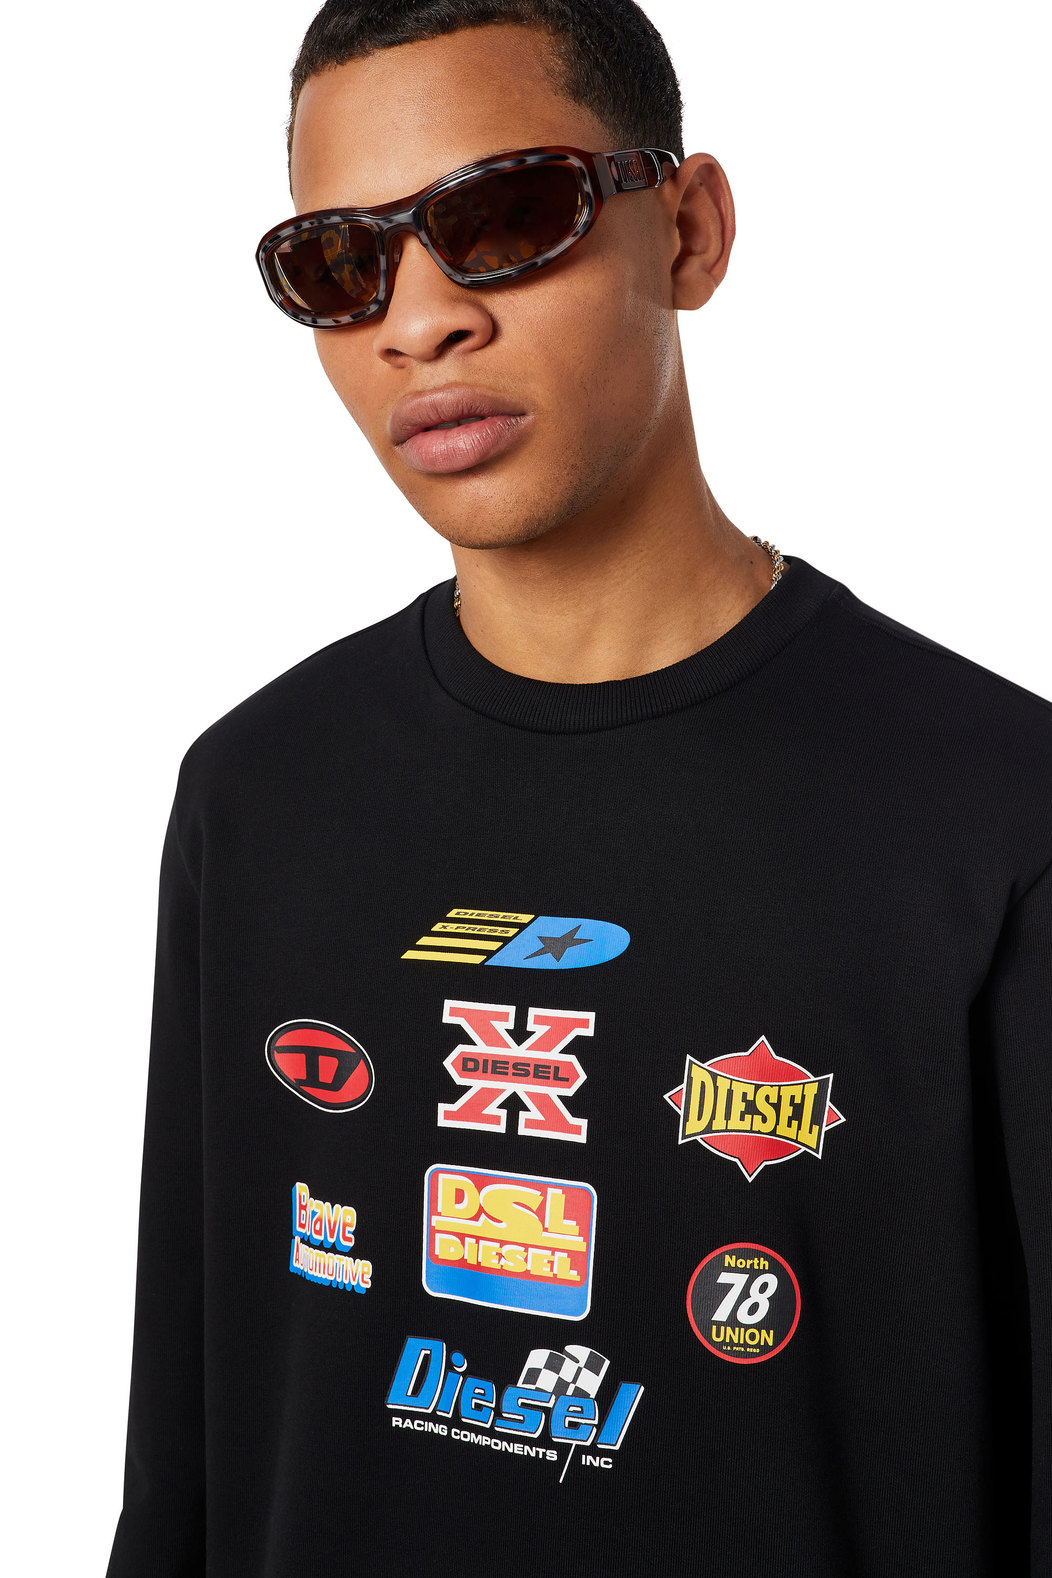 Sweatshirt with racing logo graphics